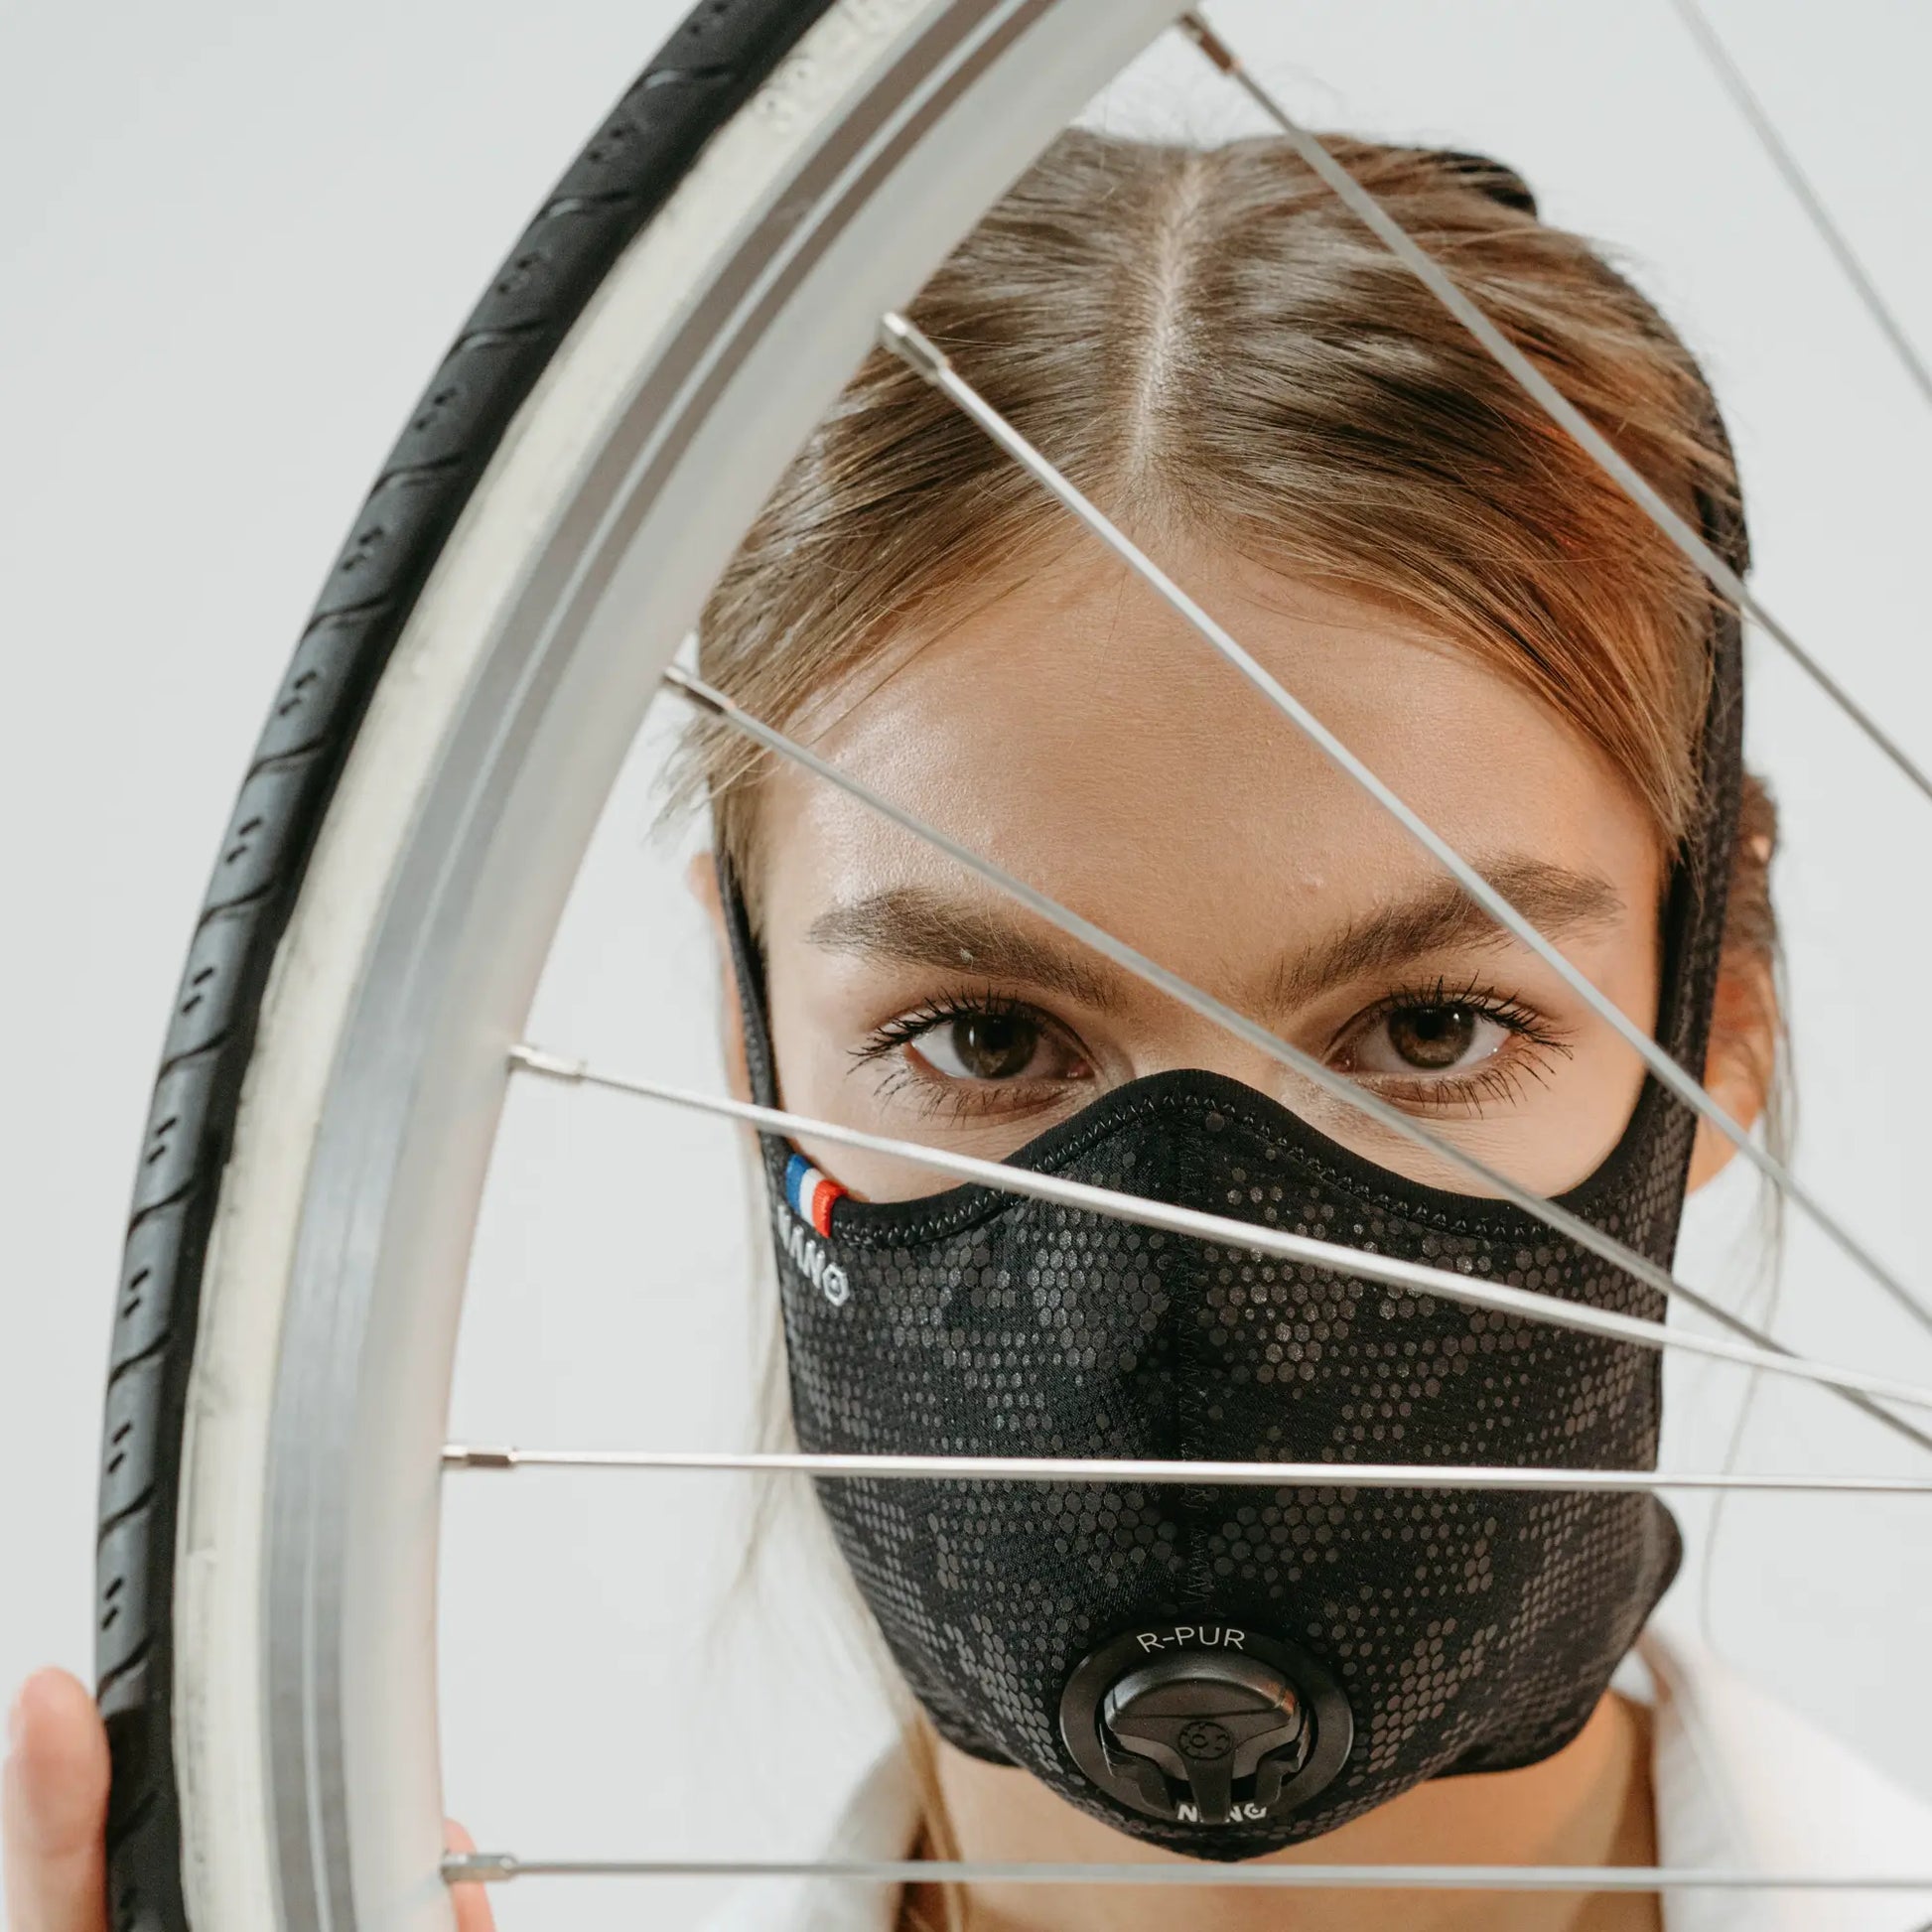 Filtre de carbone Visage Masque Protection de la poussière respirante  Masque de poussière Sports Cyclisme Vélo Bicyclette Smog Smog Smog Masques  de